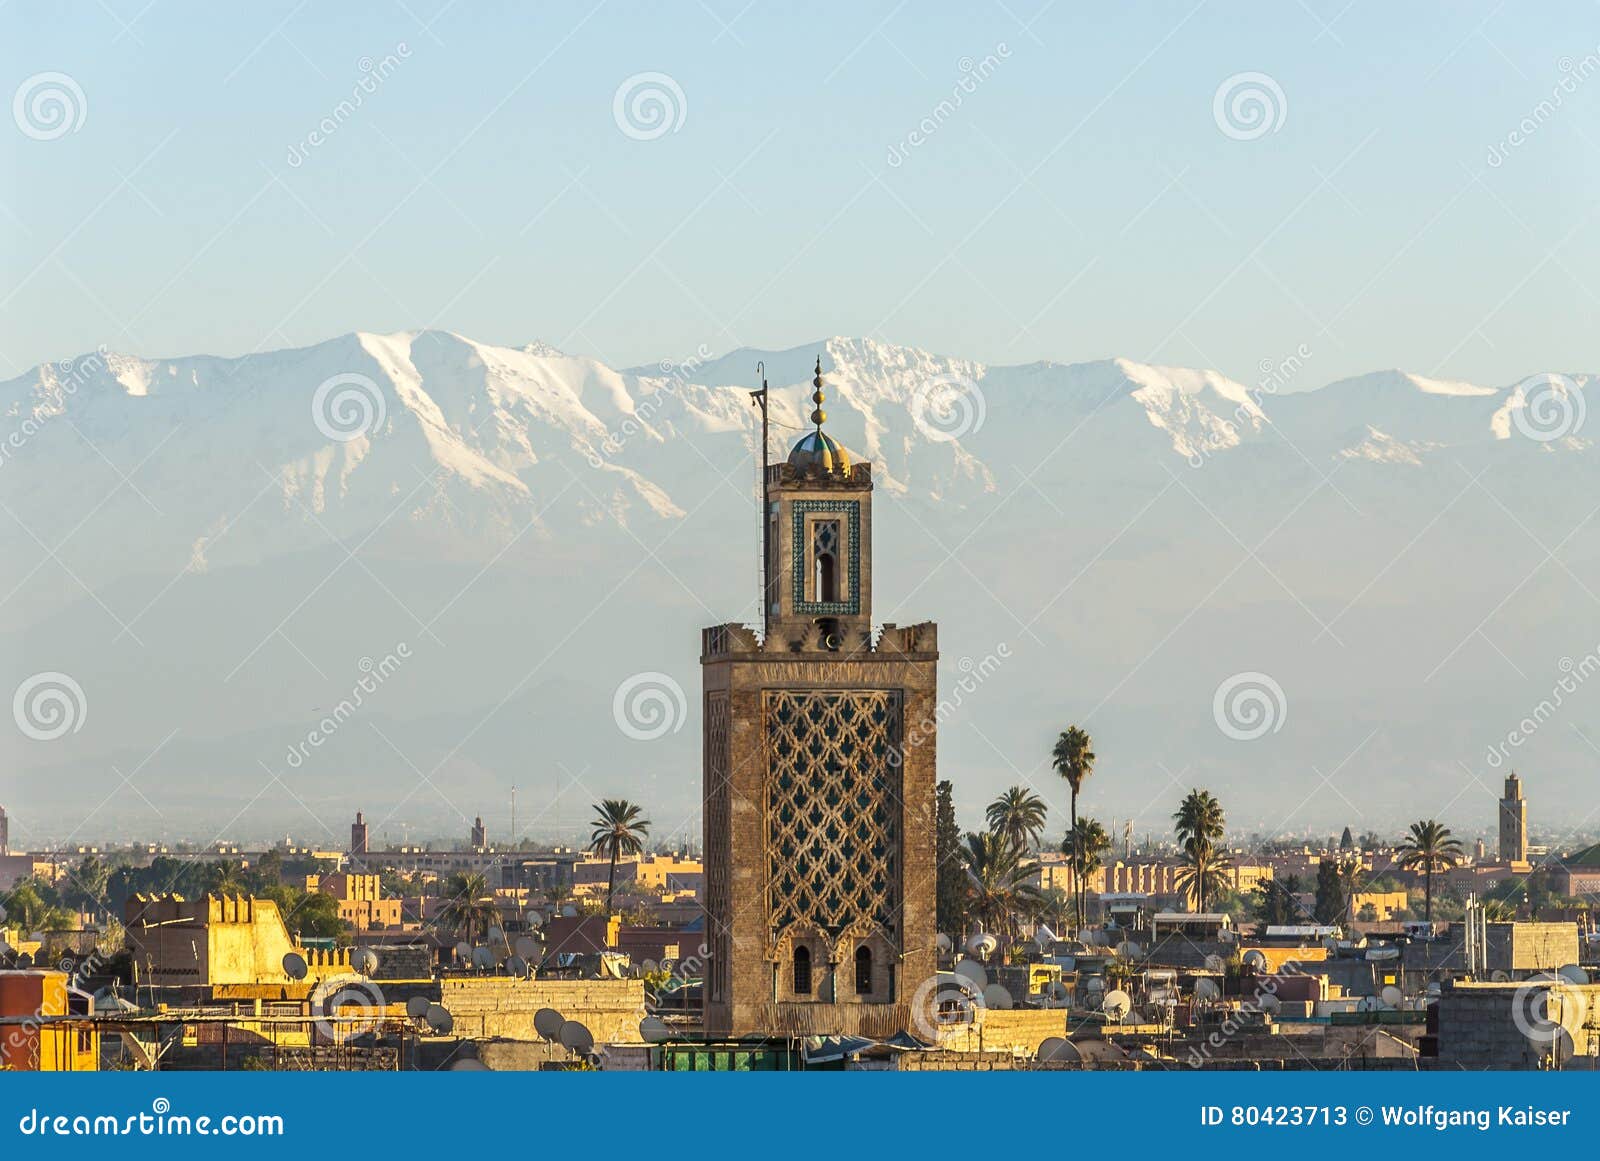 marrakech and atlas mountains in morocco